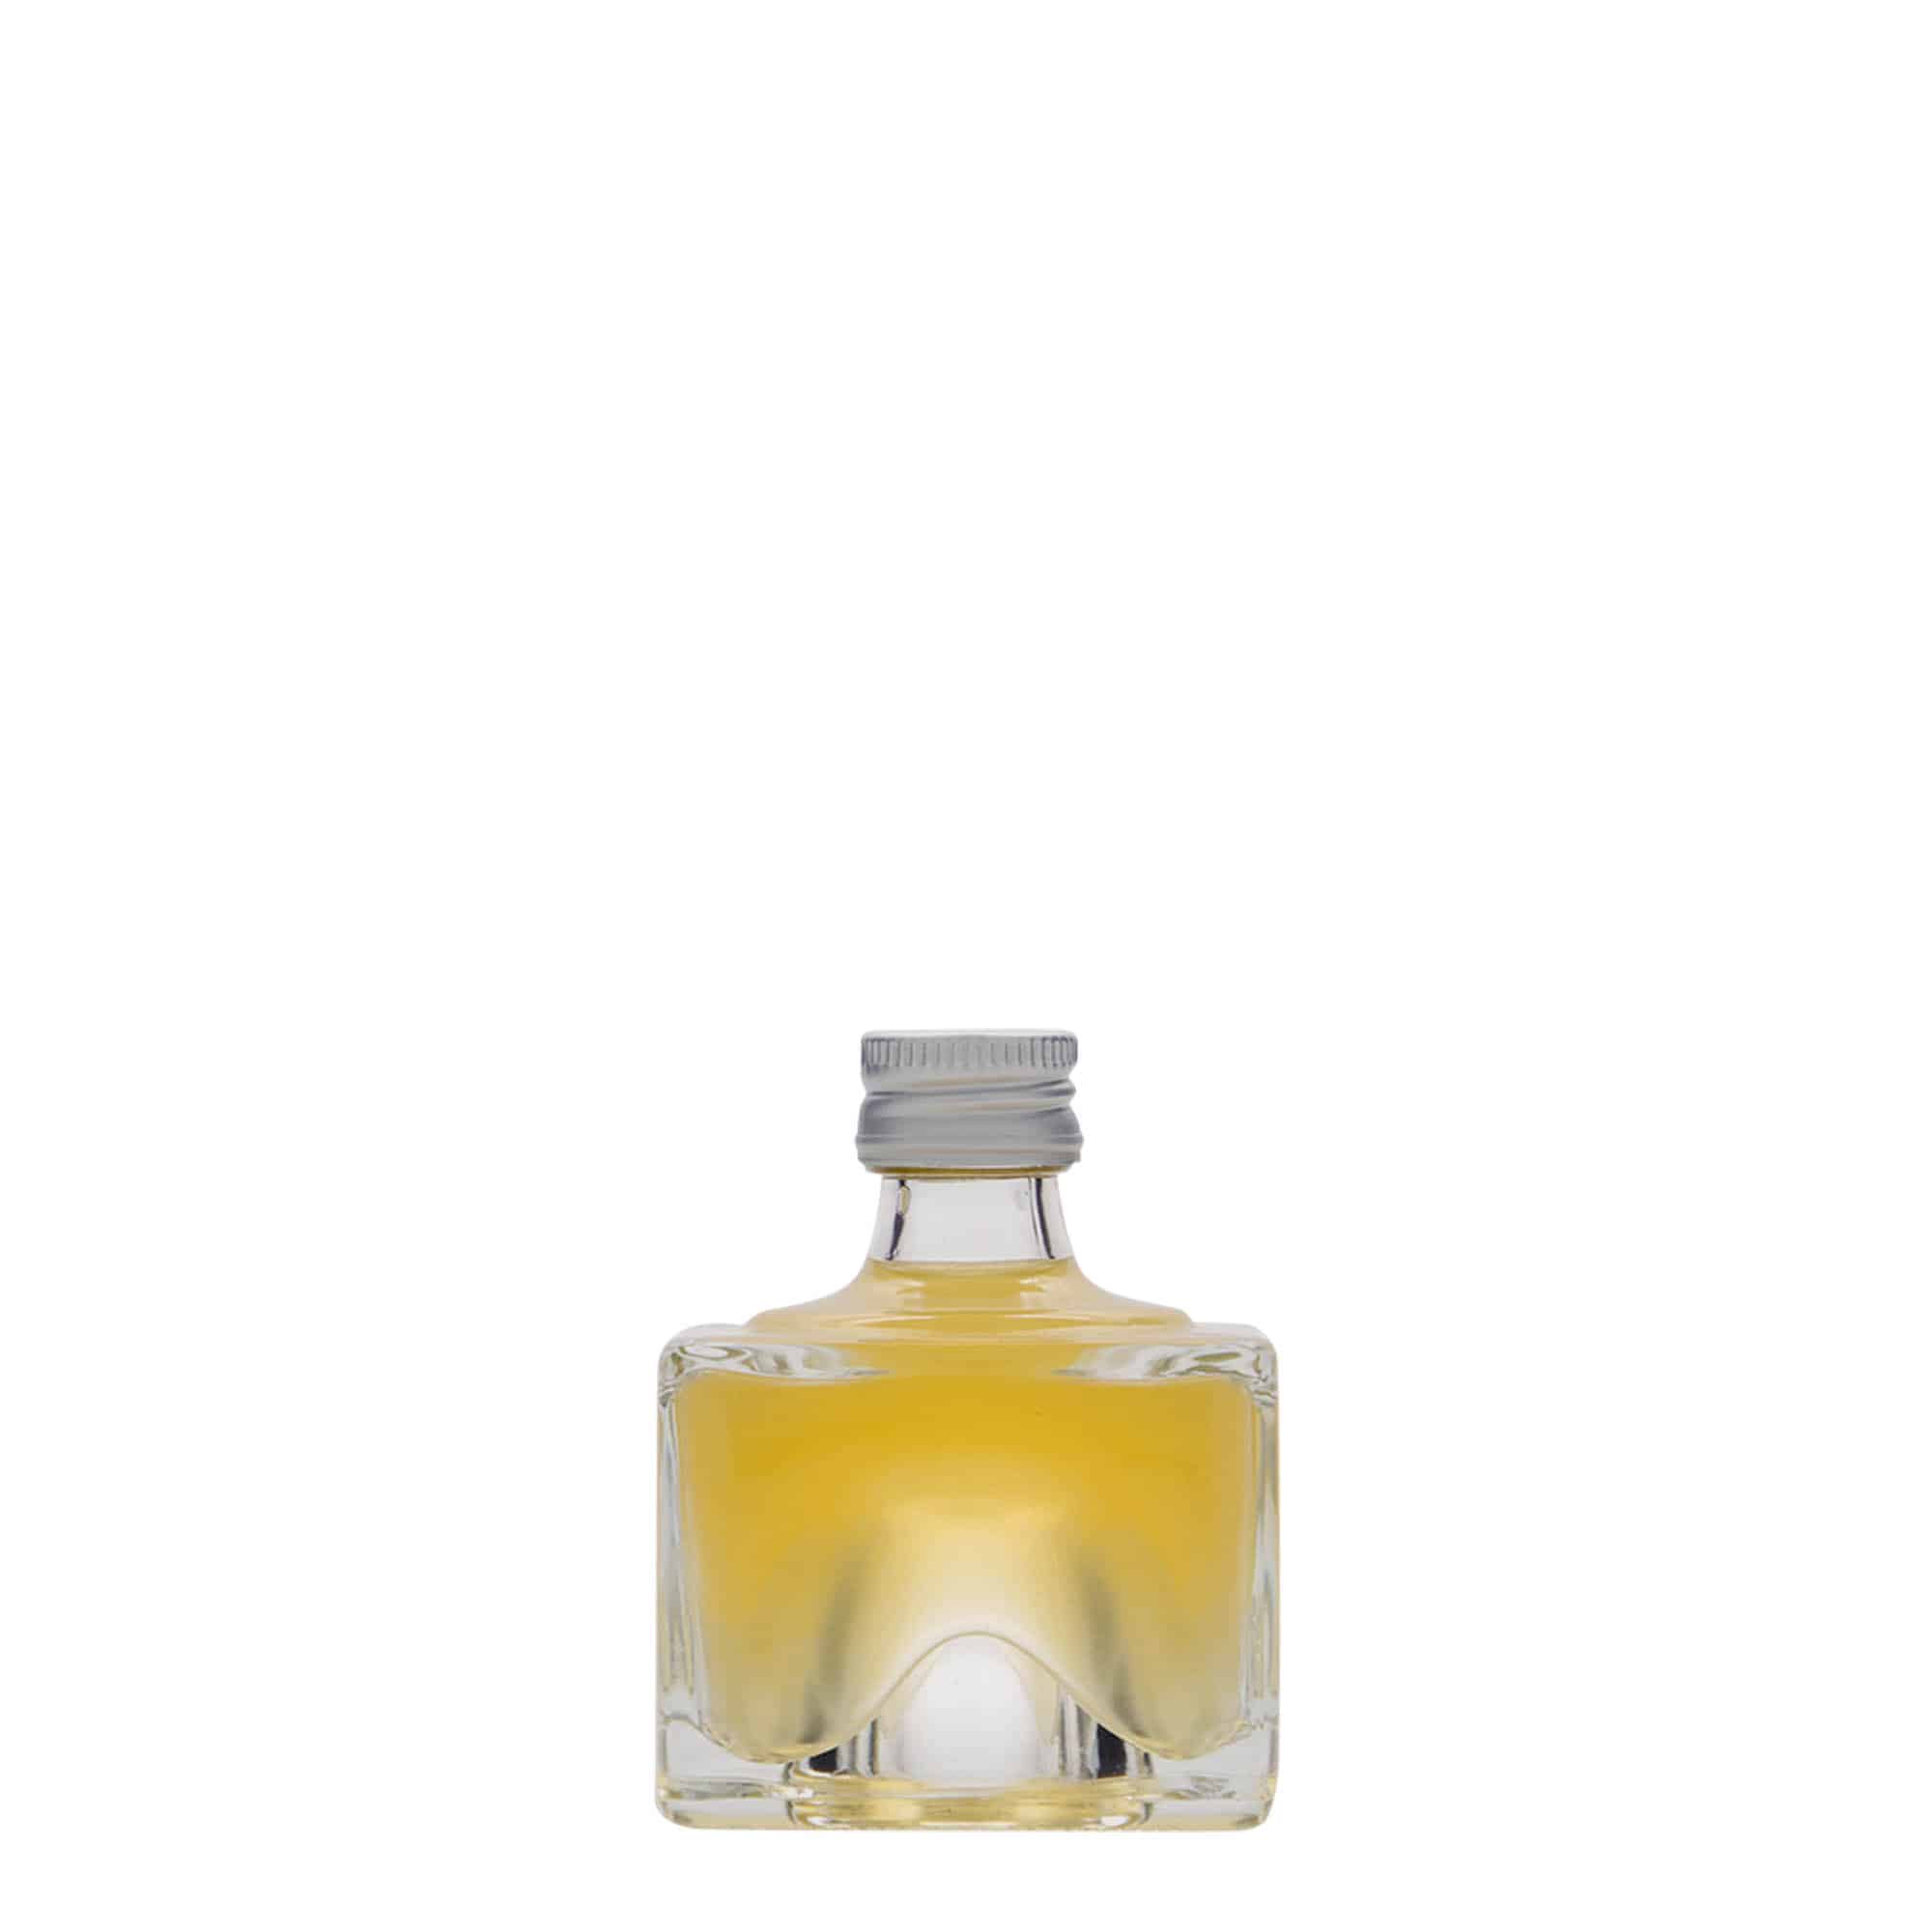 Skleněná lahev 40 ml 'Cocolores', čtvercová, uzávěr: PP 18